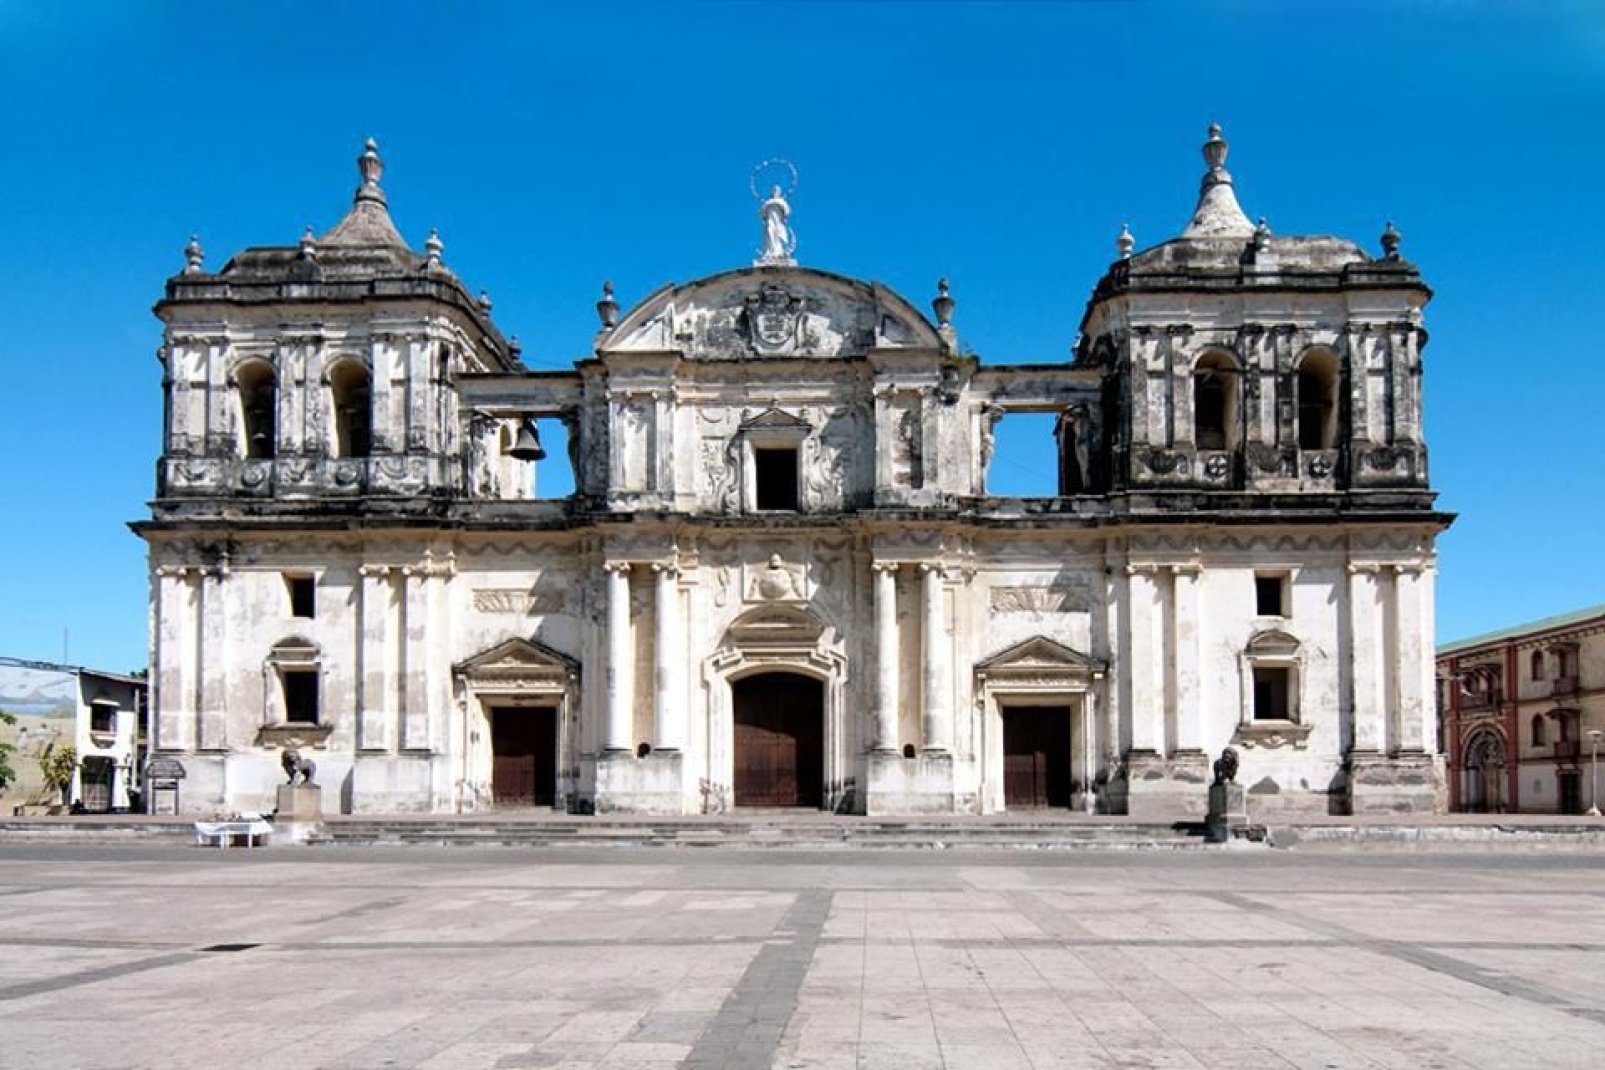 Esta catedral barroca colonial está inscrita en el patrimonio de la Unesco desde junio de 2011. Se elevó al rango de Basílica en el siglo XIX.